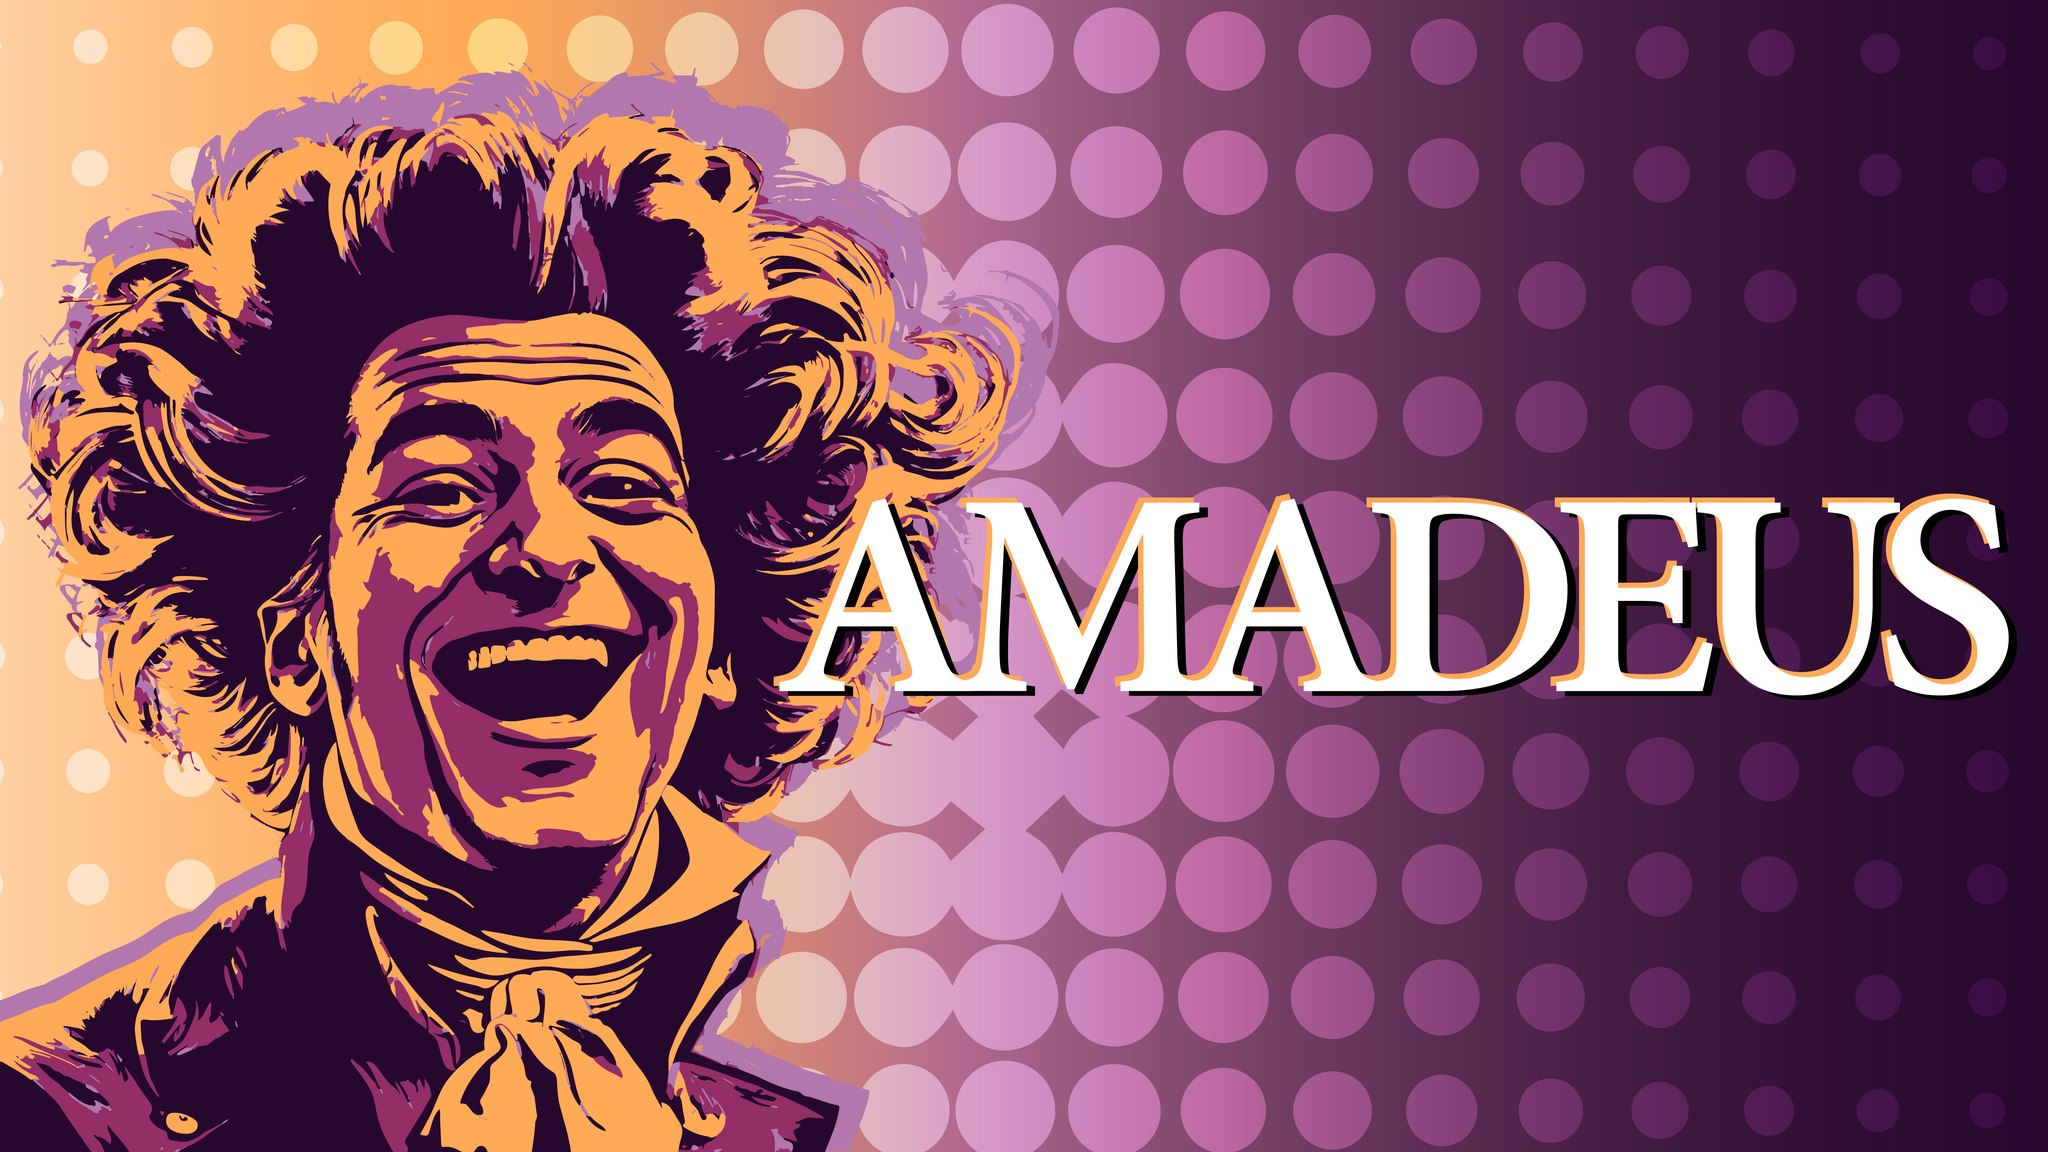 Amadeus by Classic Theatre of San Antonio